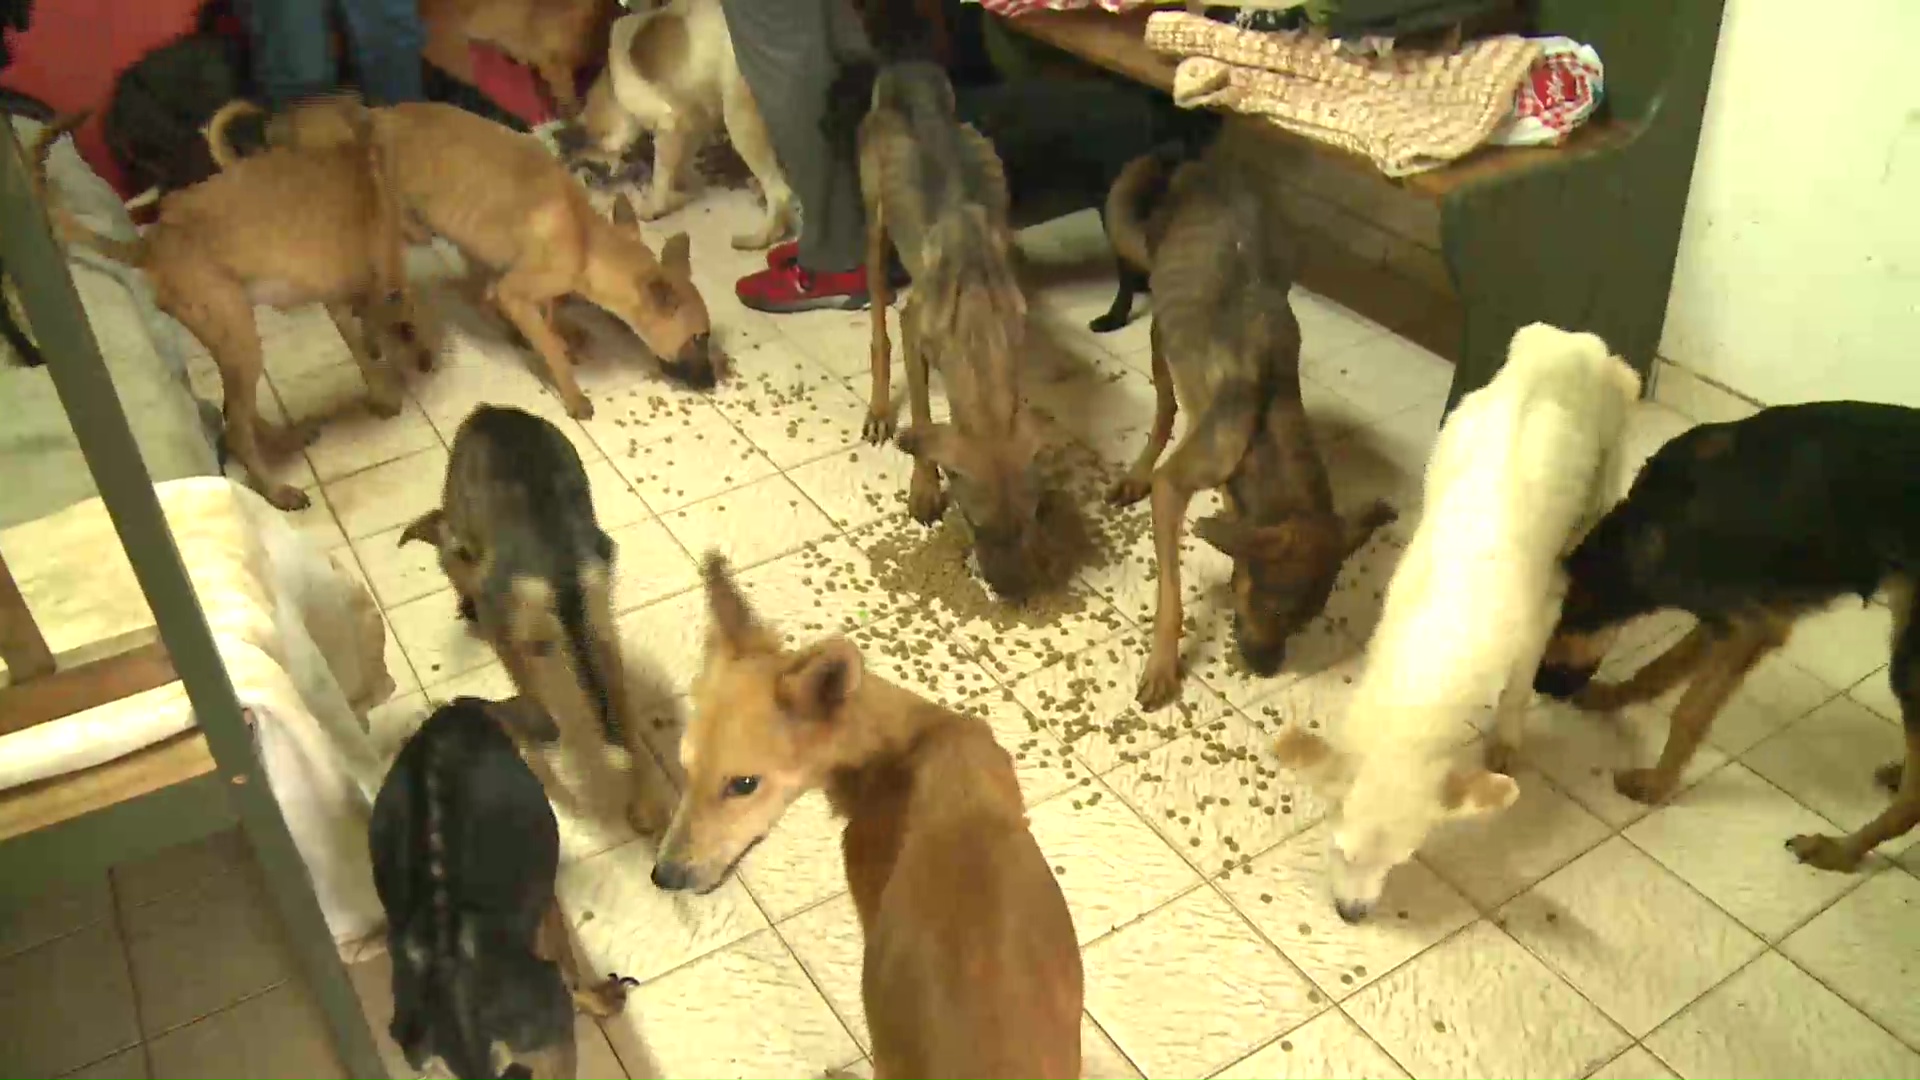 Maltrato animal. Hallaron 27 perros desnutridos y abandonados en una casa